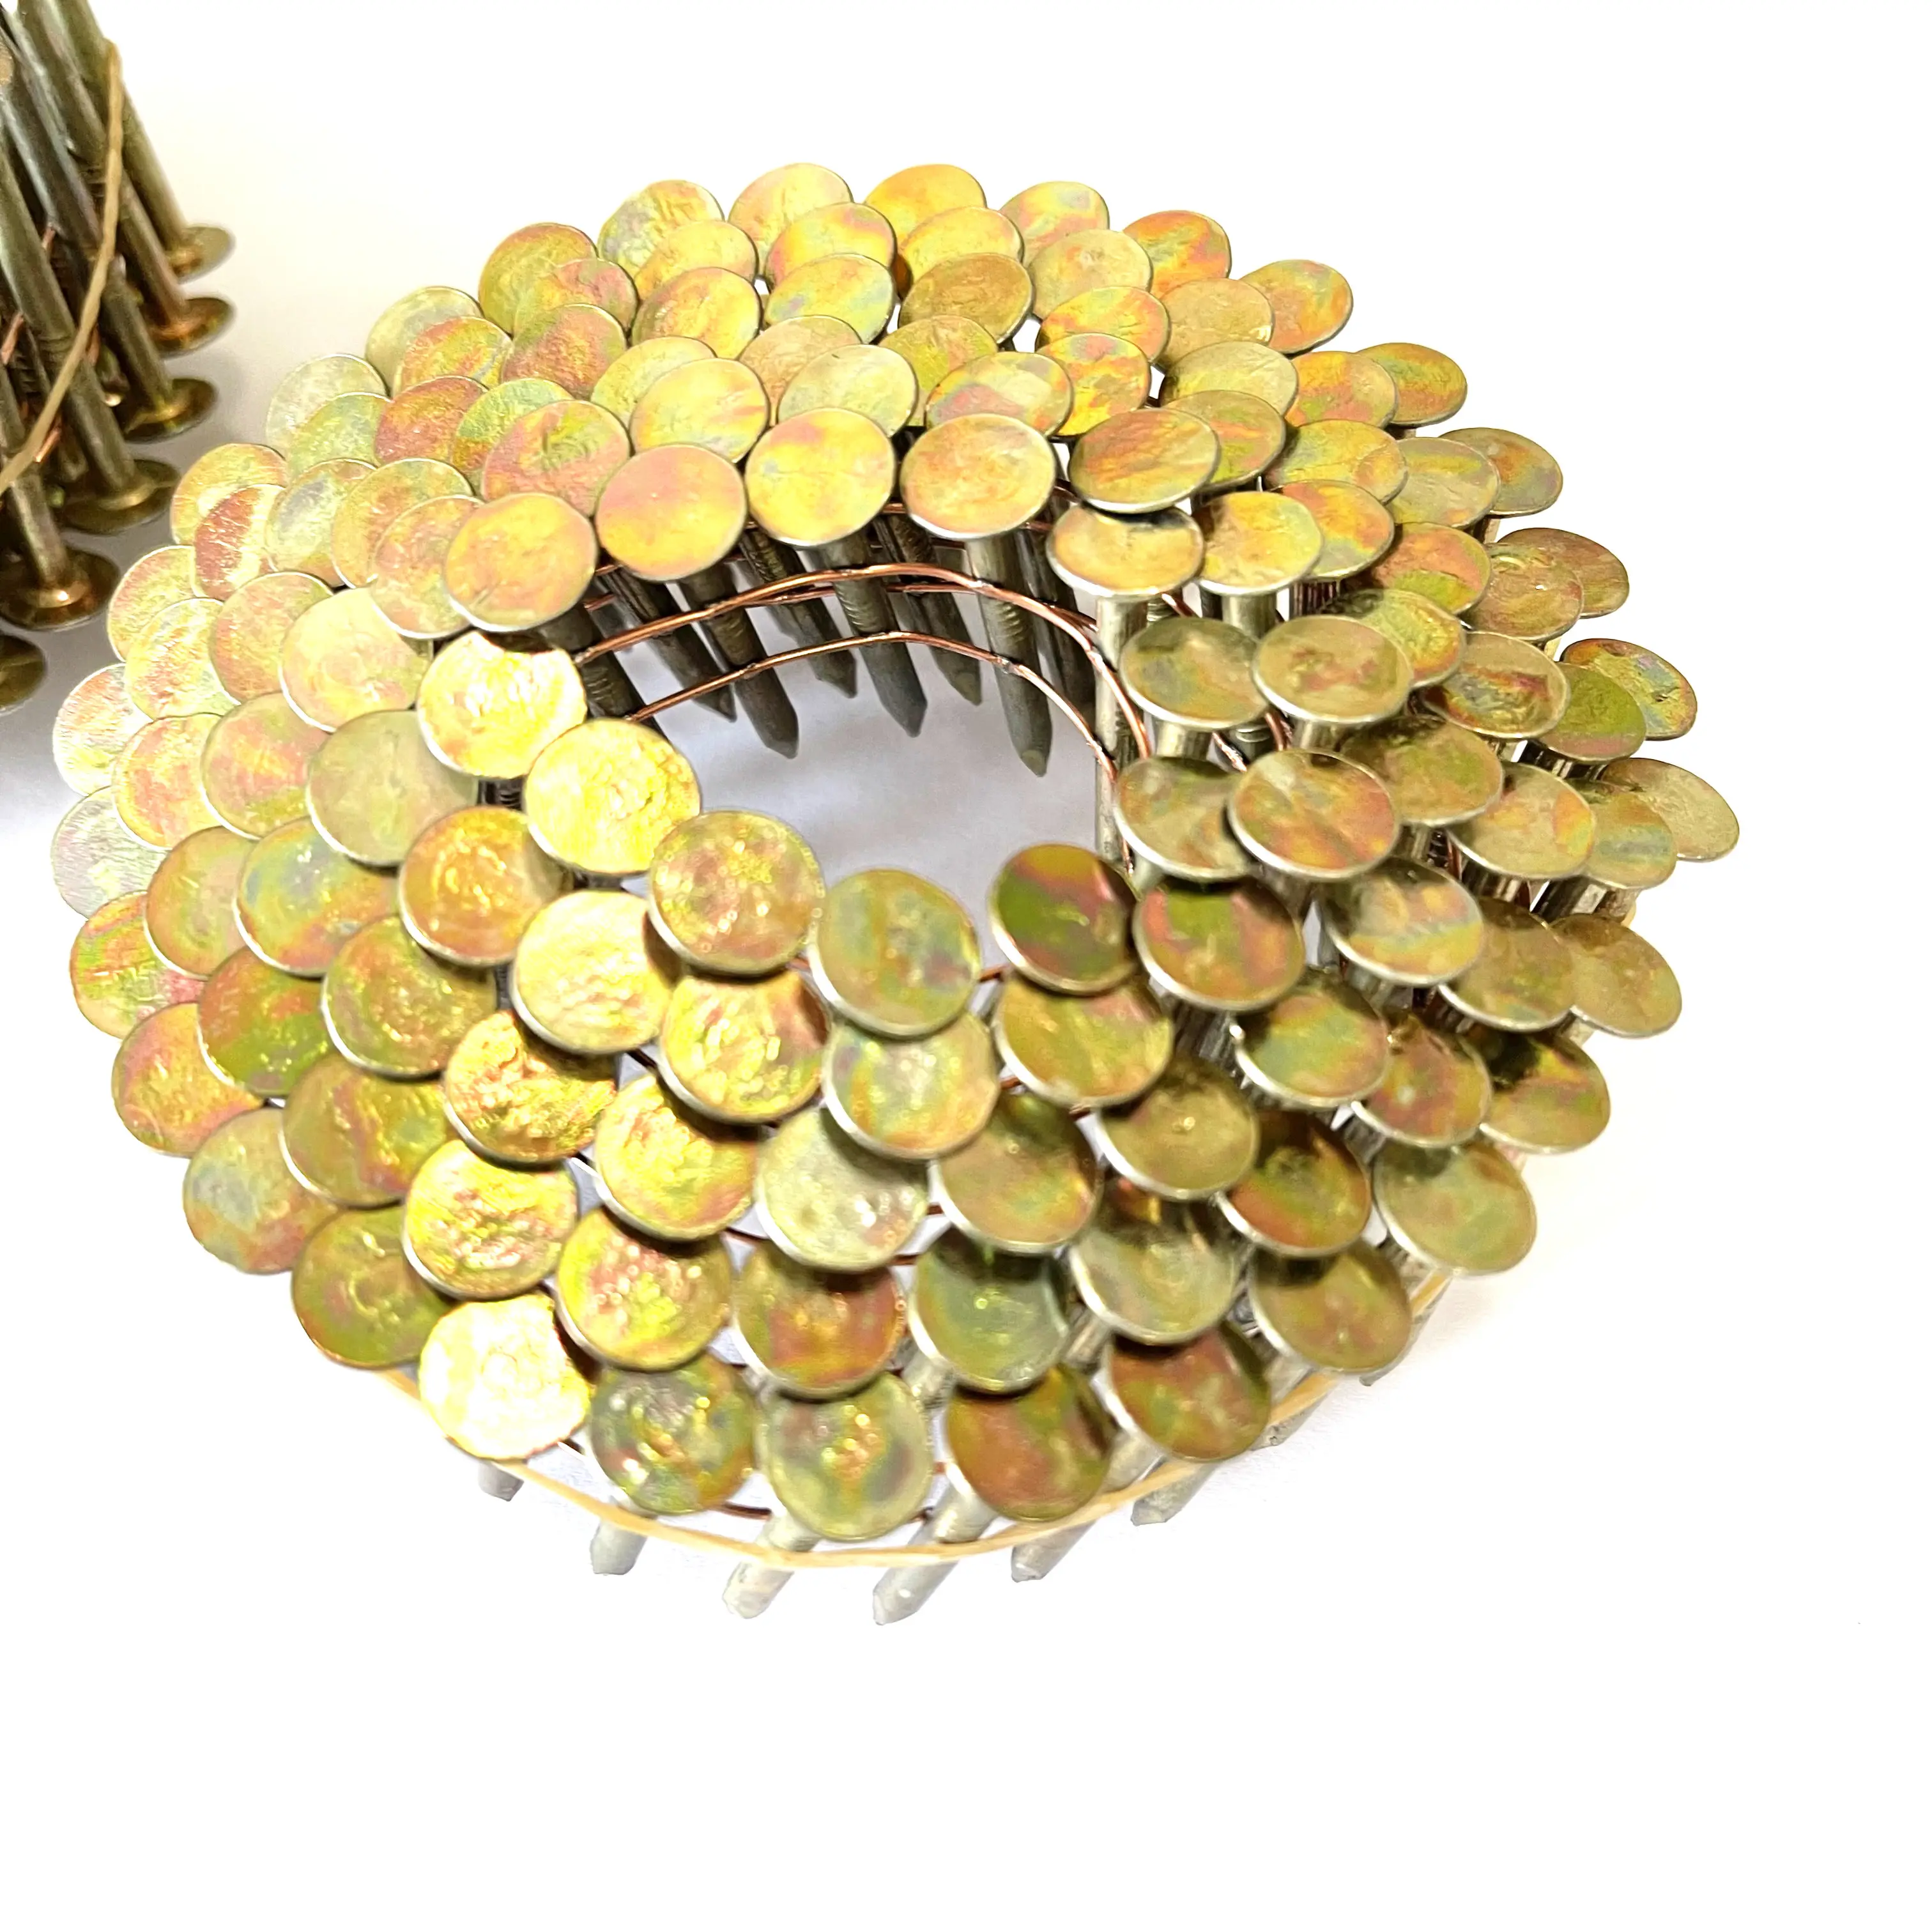 1 1 4 giallo zinco ferro metallo bobina del filo del chiodo del tetto del chiodo per pallet di legno